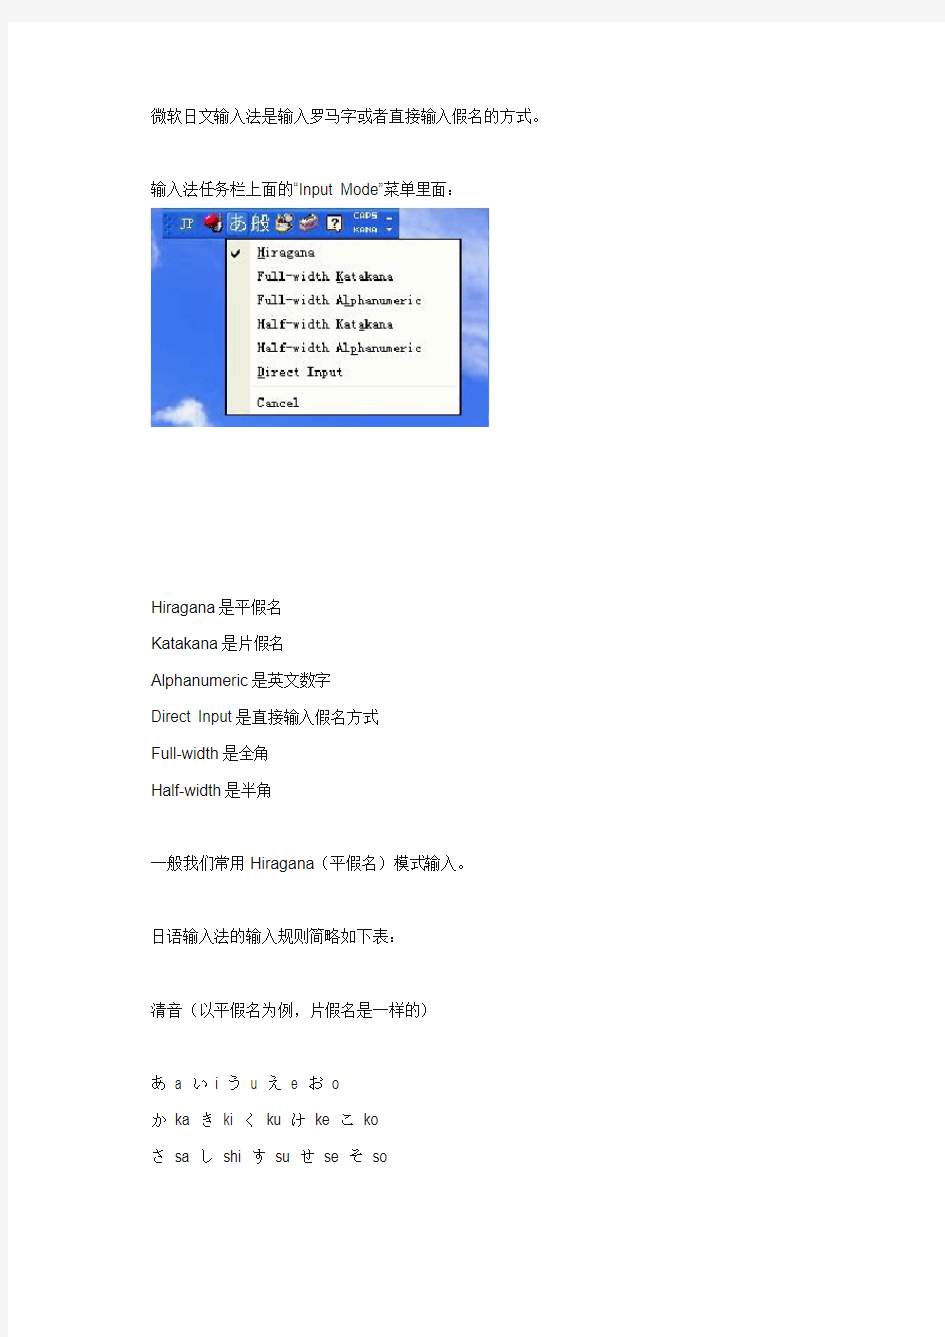 微软日文输入法是输入罗马字或者直接输入假名的方式